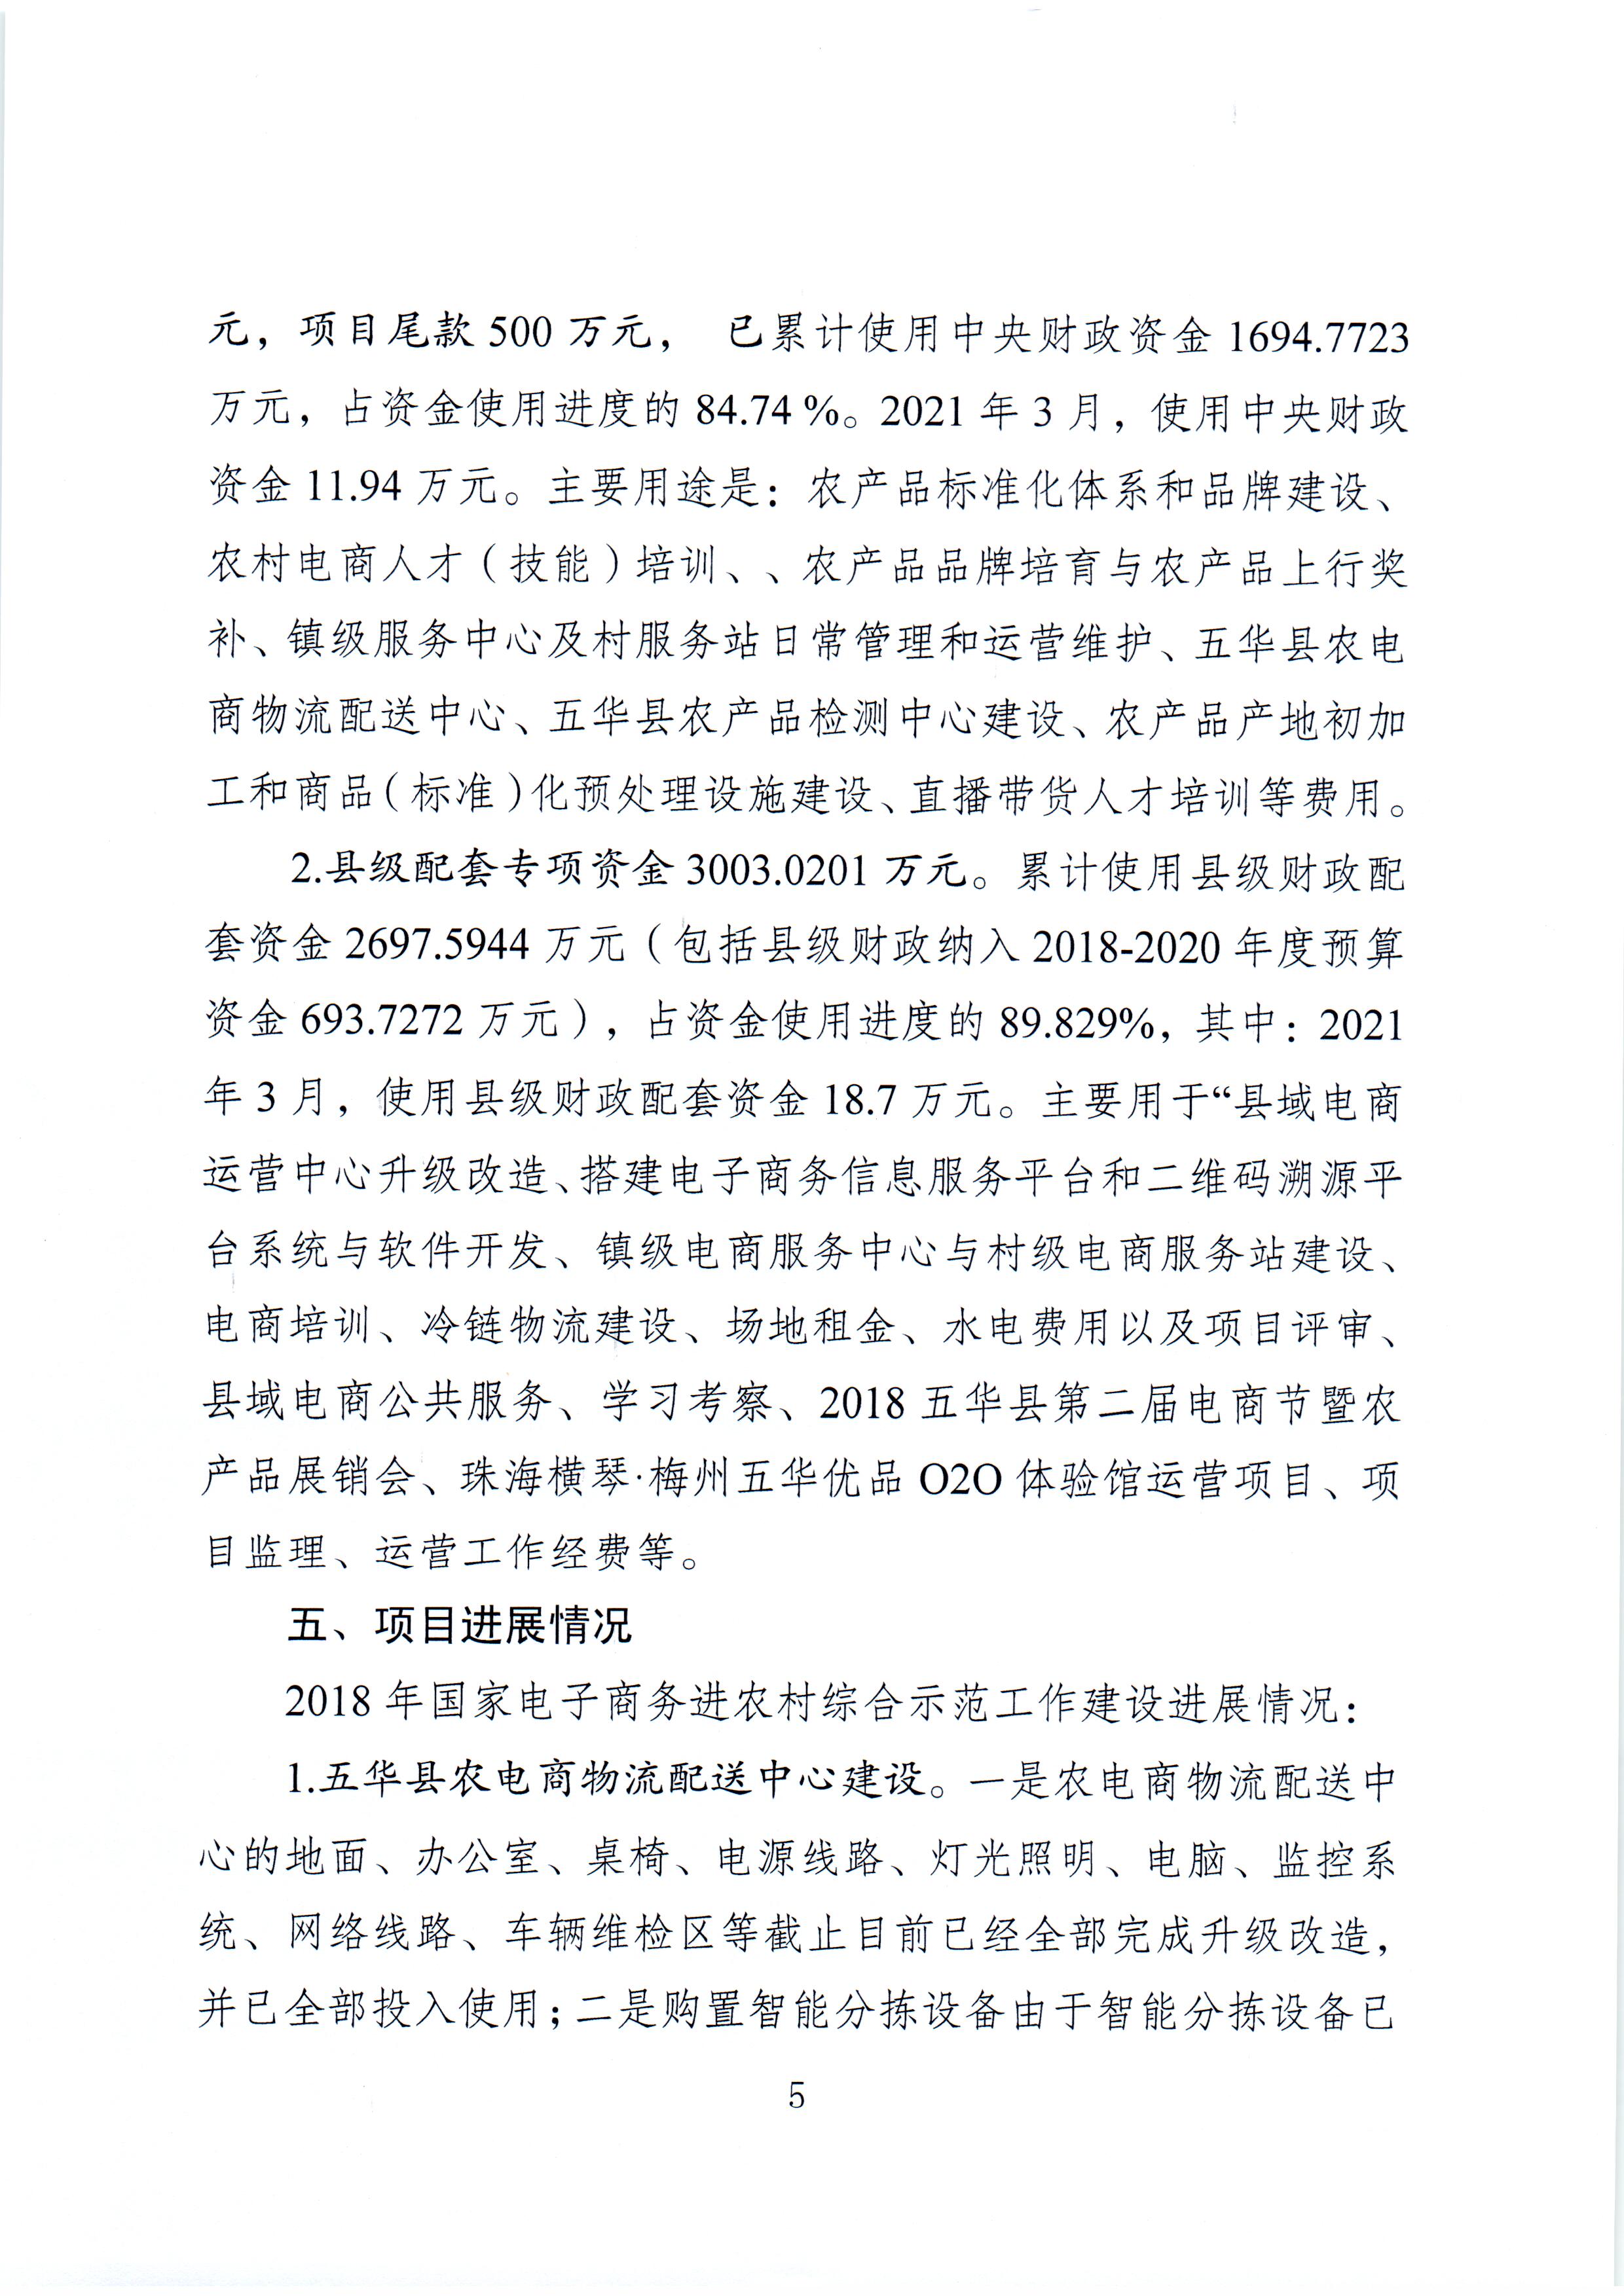 1、五华县电子商务进农村综合示范项目2021年3月工作推进情况（领导小组办公室）--（2021年4月5日确定版） (5).jpg